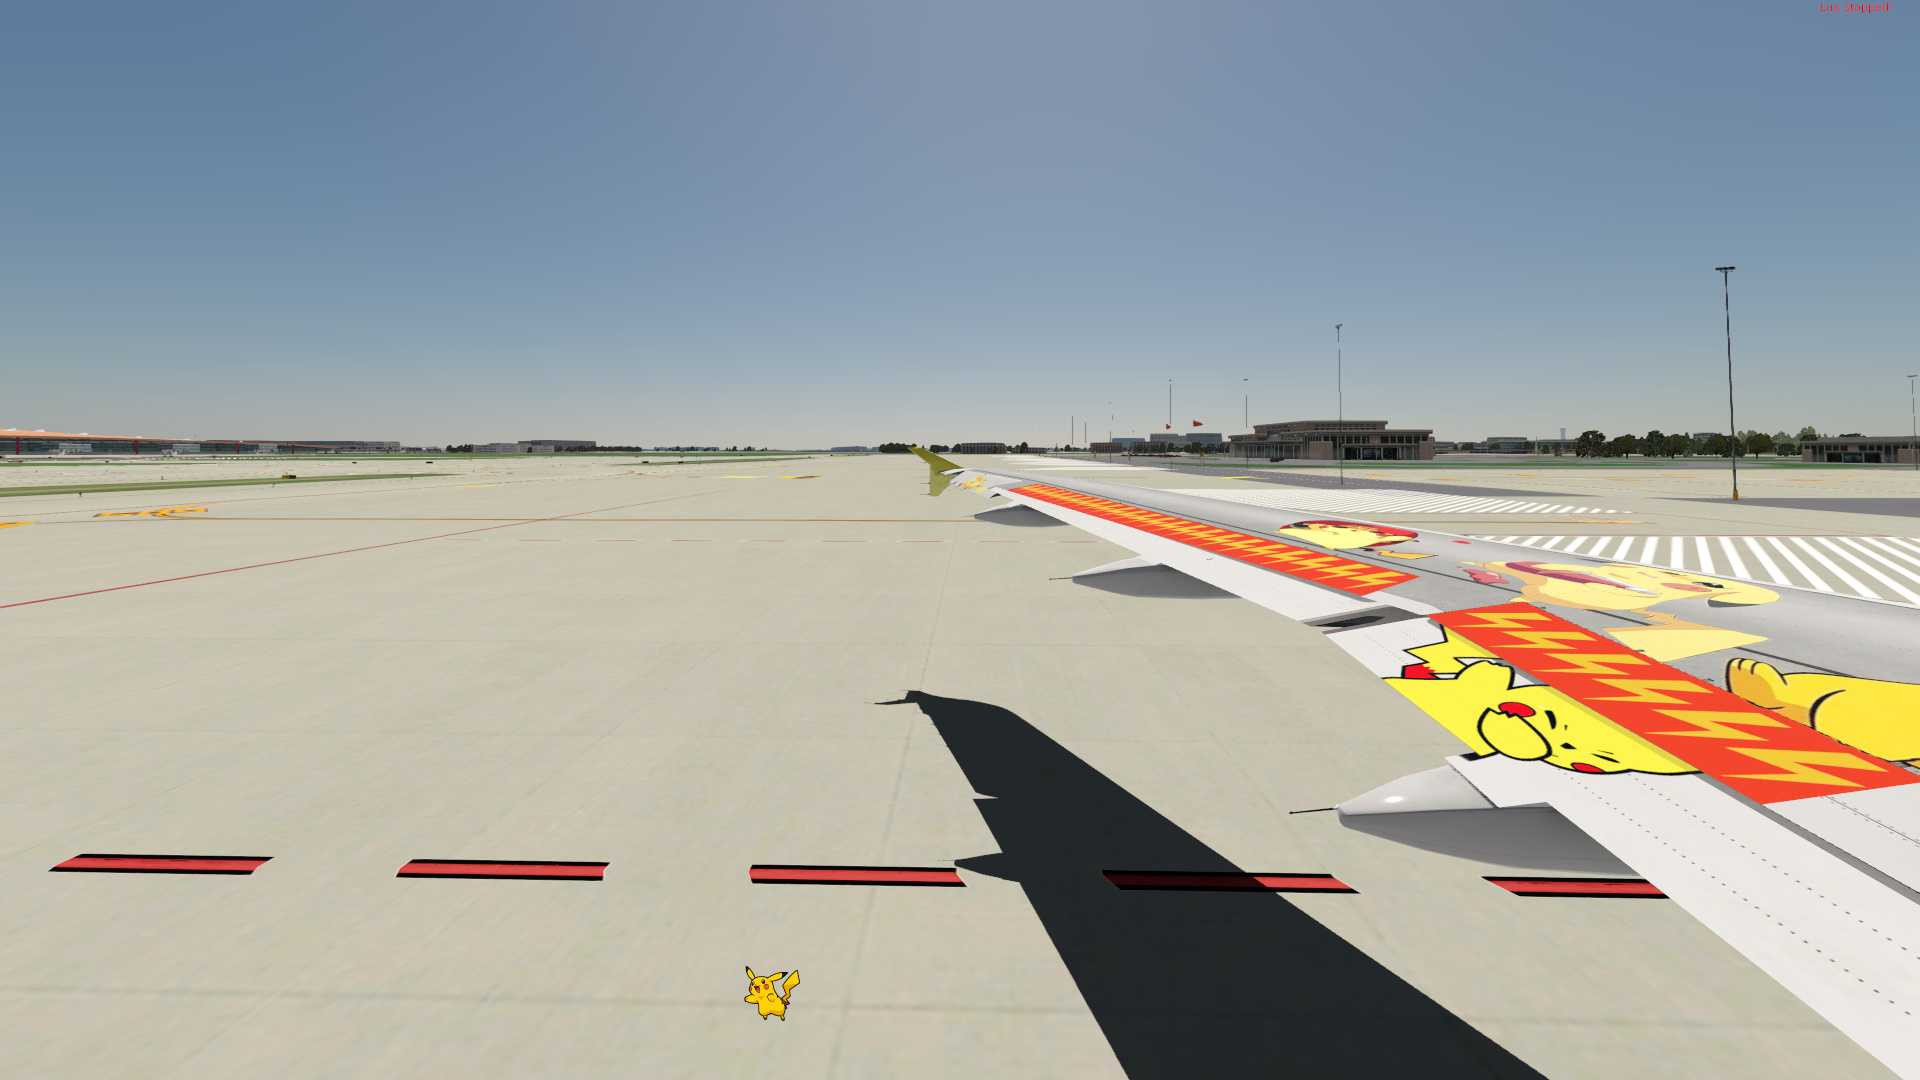 【X-Plane11】空客A319皮卡丘涂装 1.0-2294 